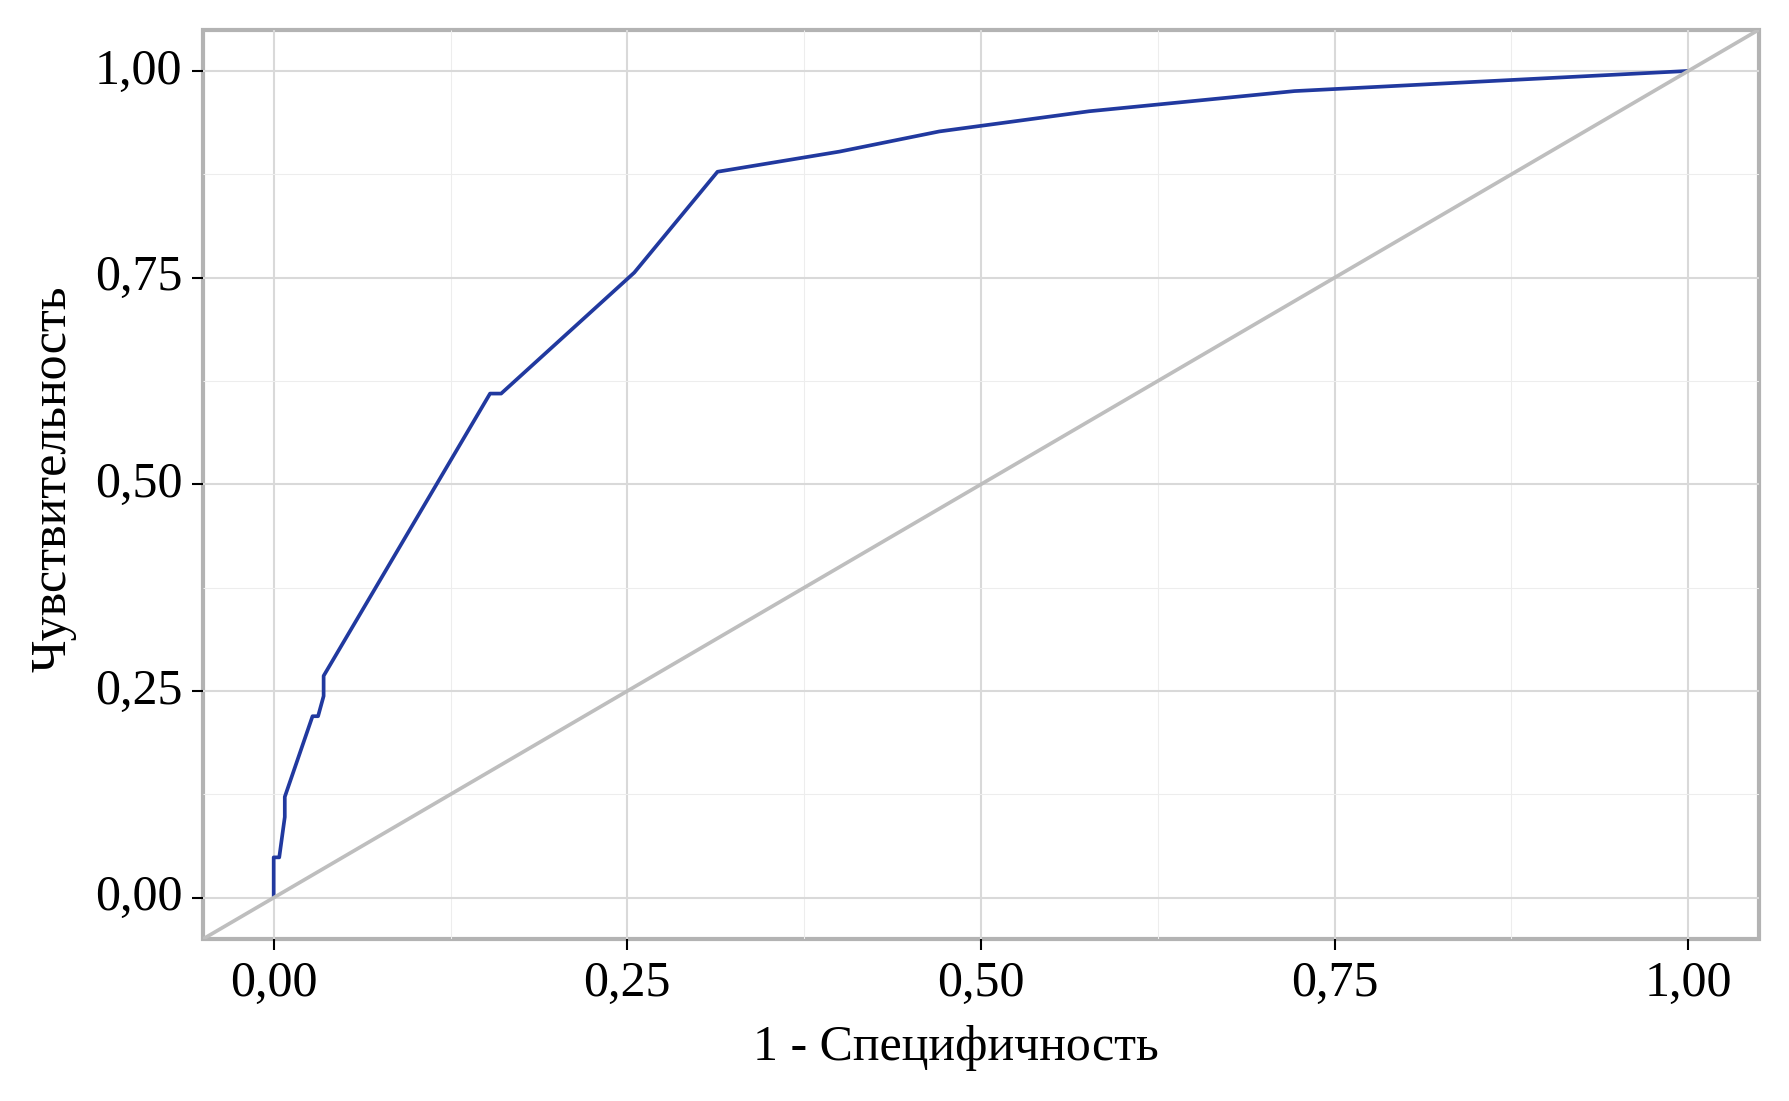 ROC-кривая, характеризующая зависимость вероятности показателя «Наличие клинической симптоматики пролапса» от значения логистической функции P